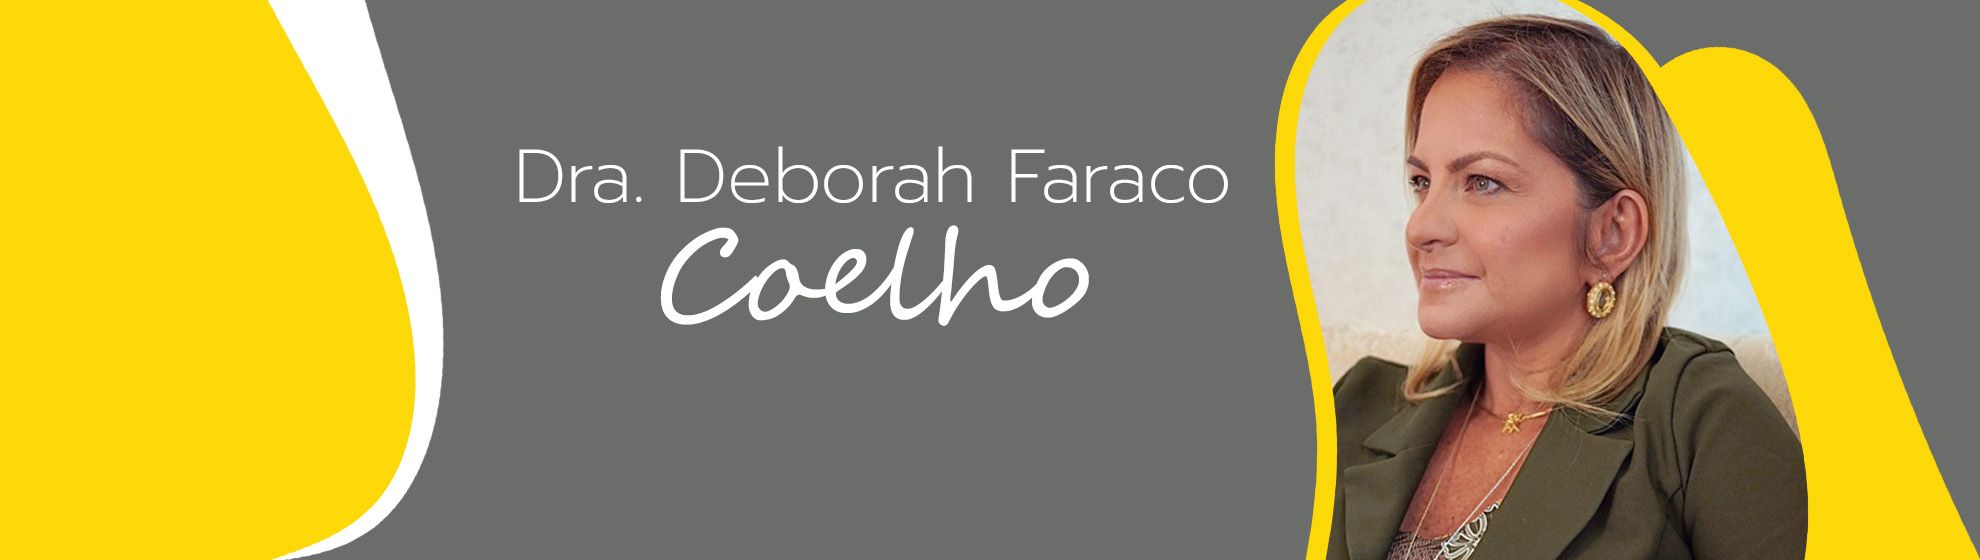 Dra. Deborah Faraco Coelho